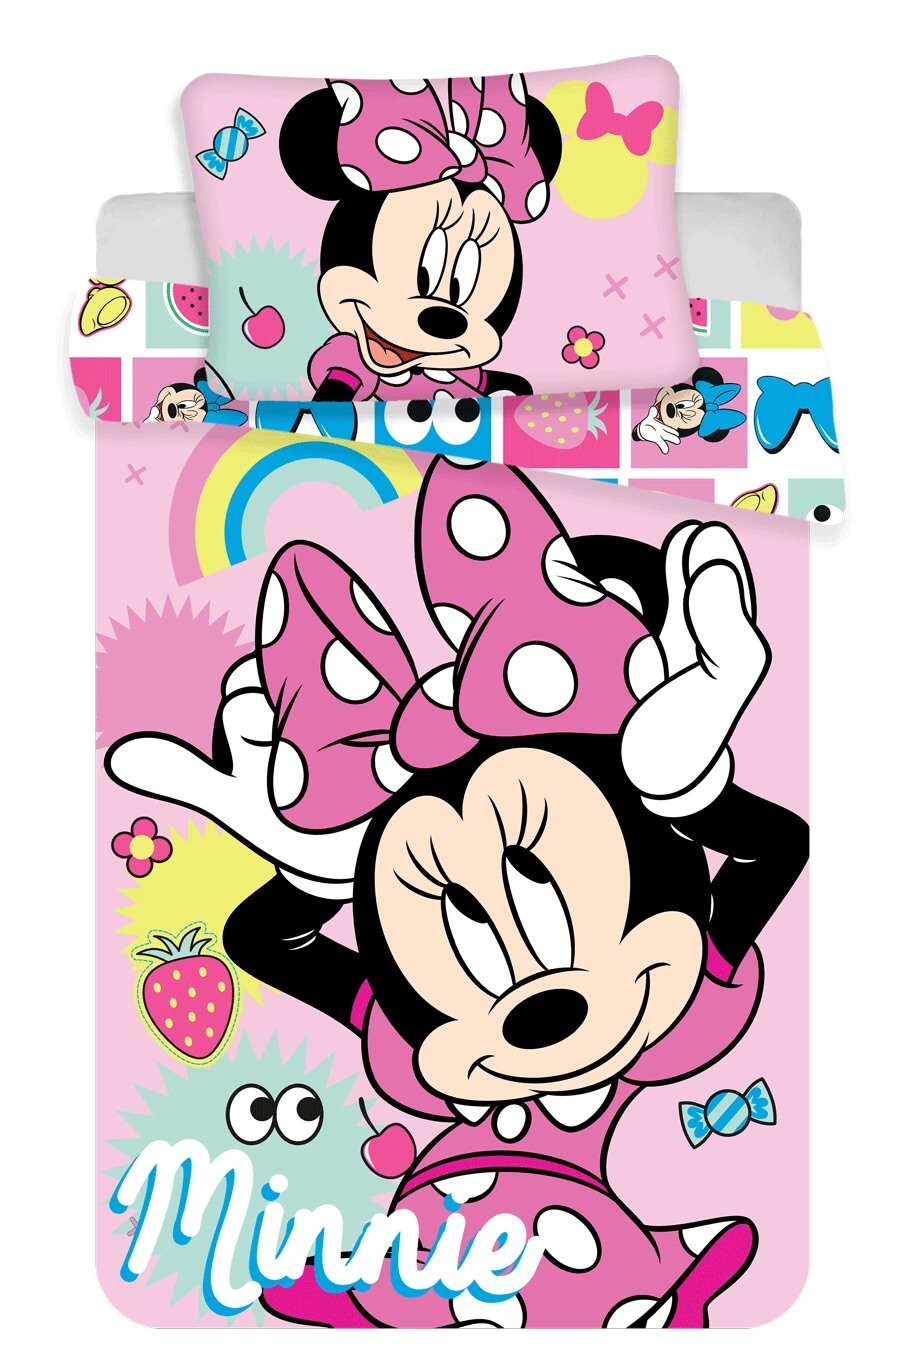 Disney povlečení do postýlky Minnie "Pink square" baby 100x135, 40x60 cm